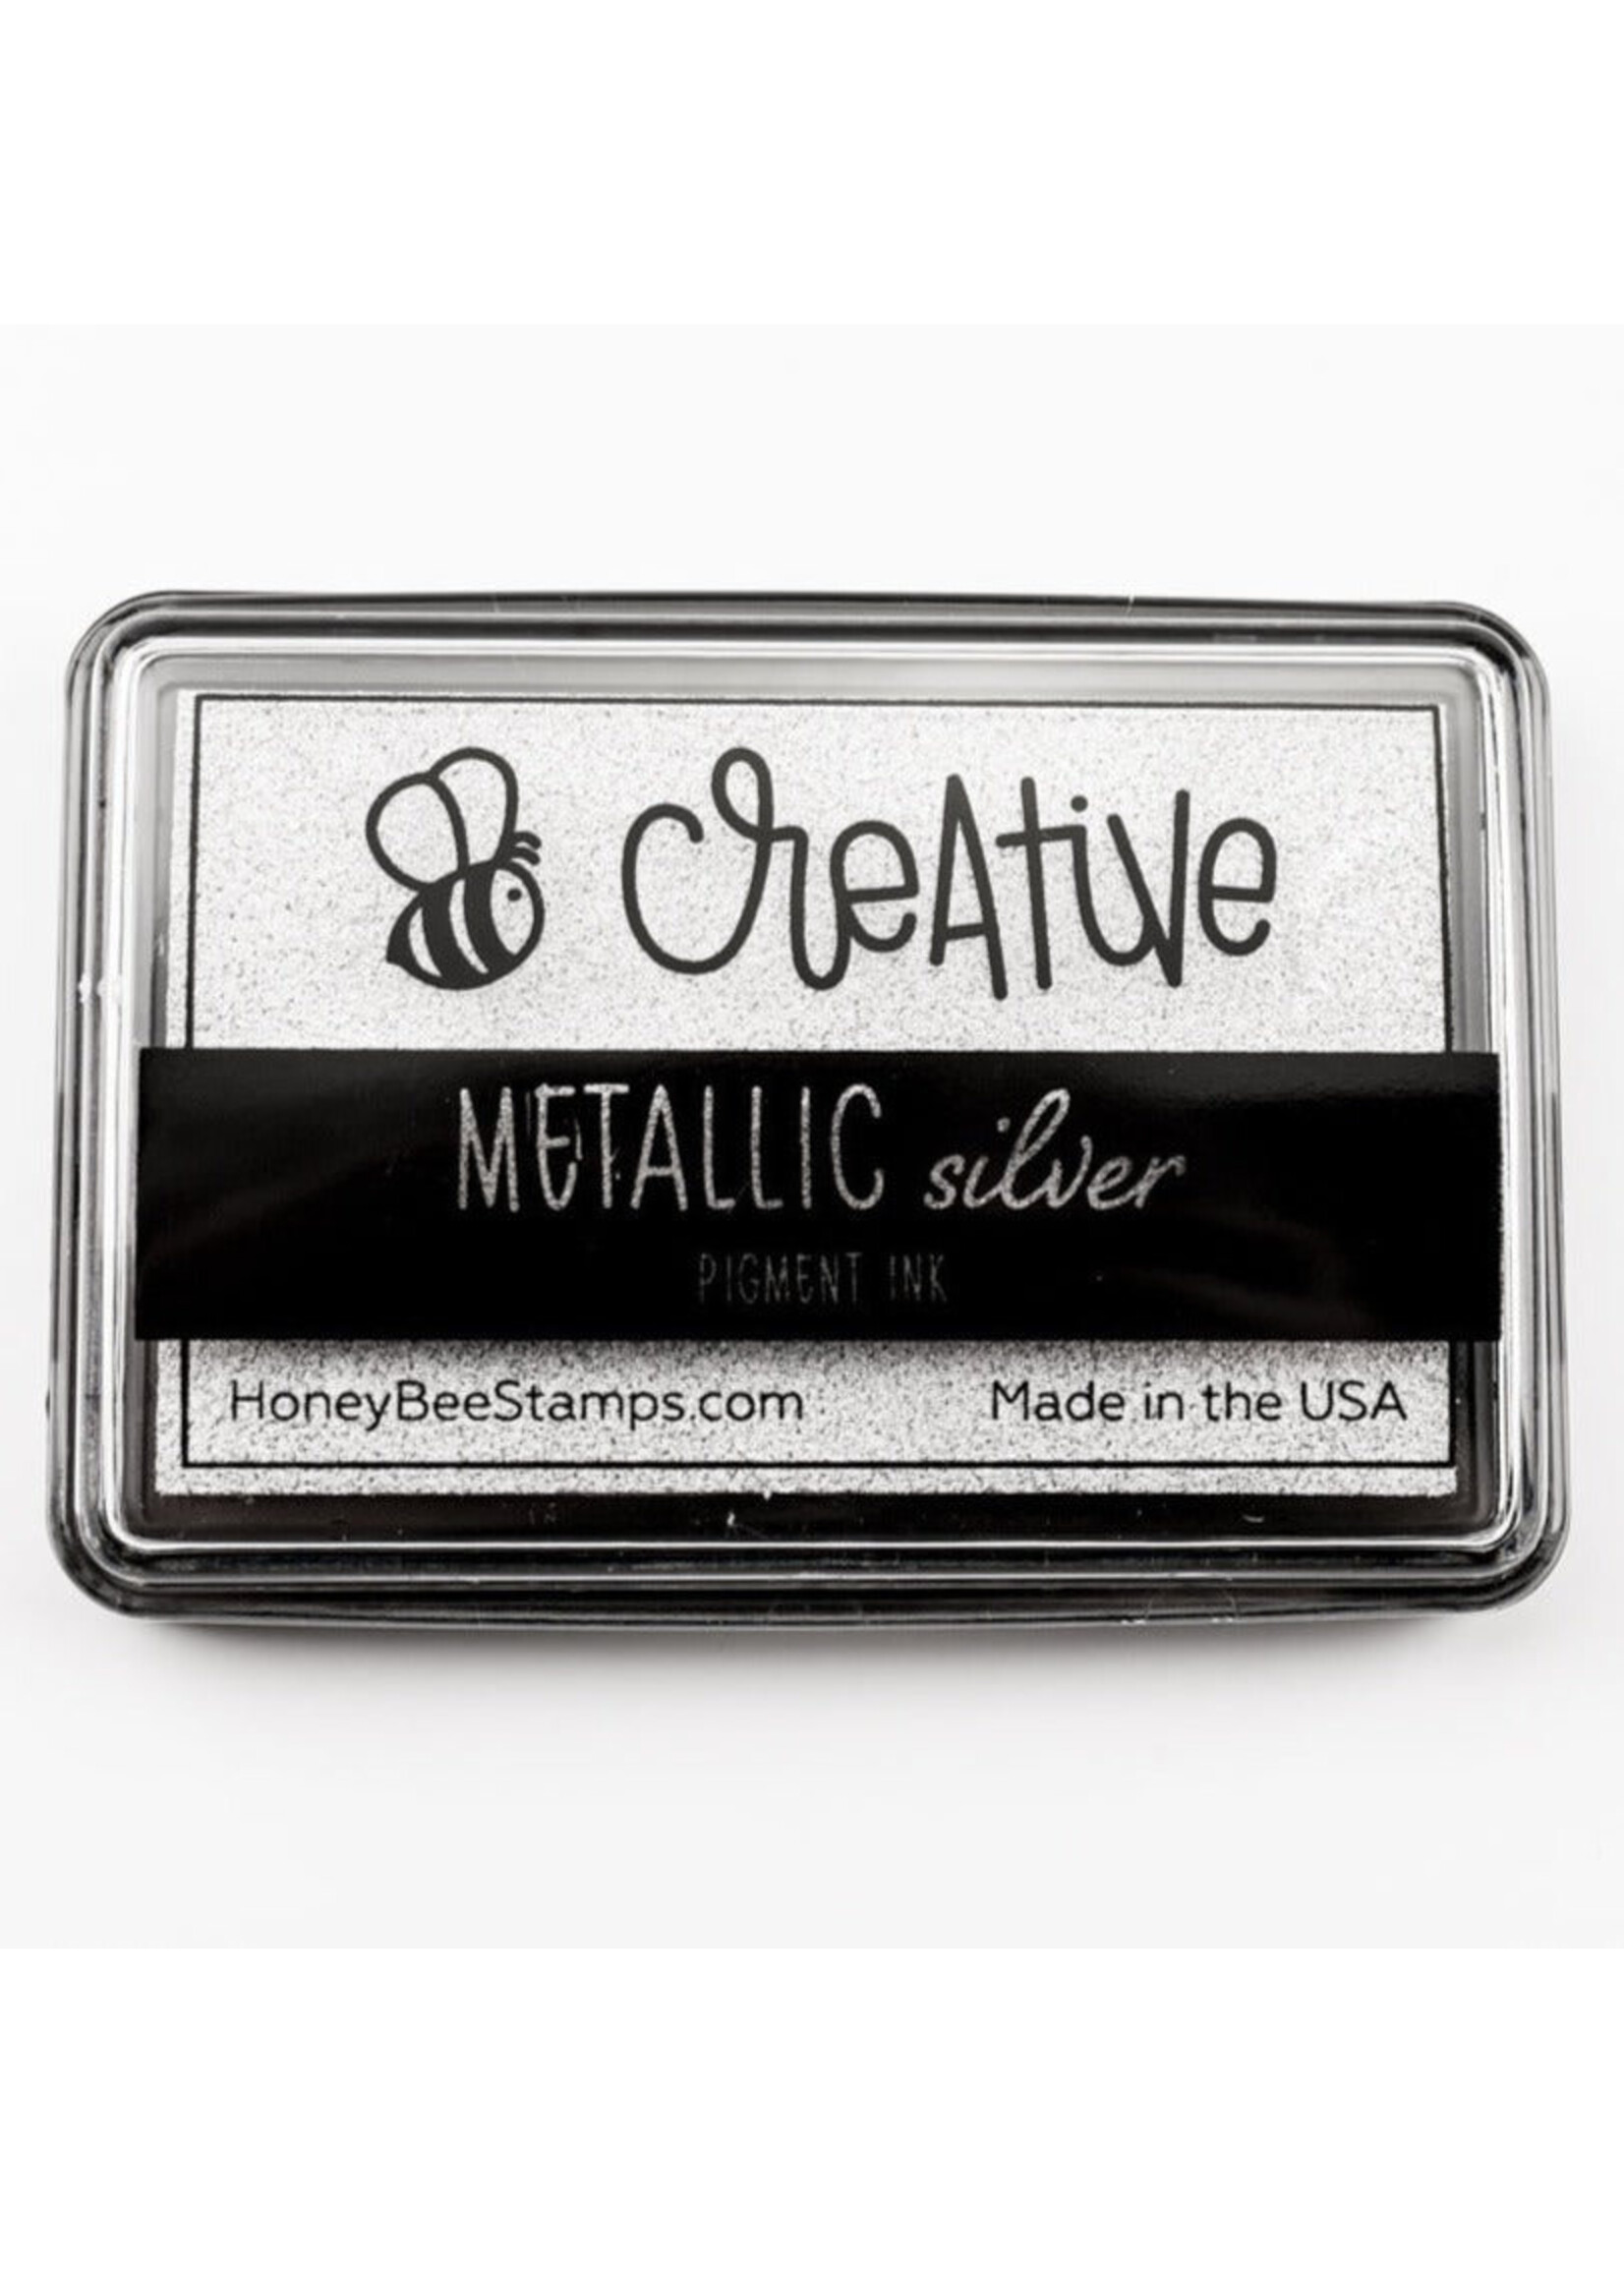 Honey Bee Stamps Metallic Silver Pigment Ink